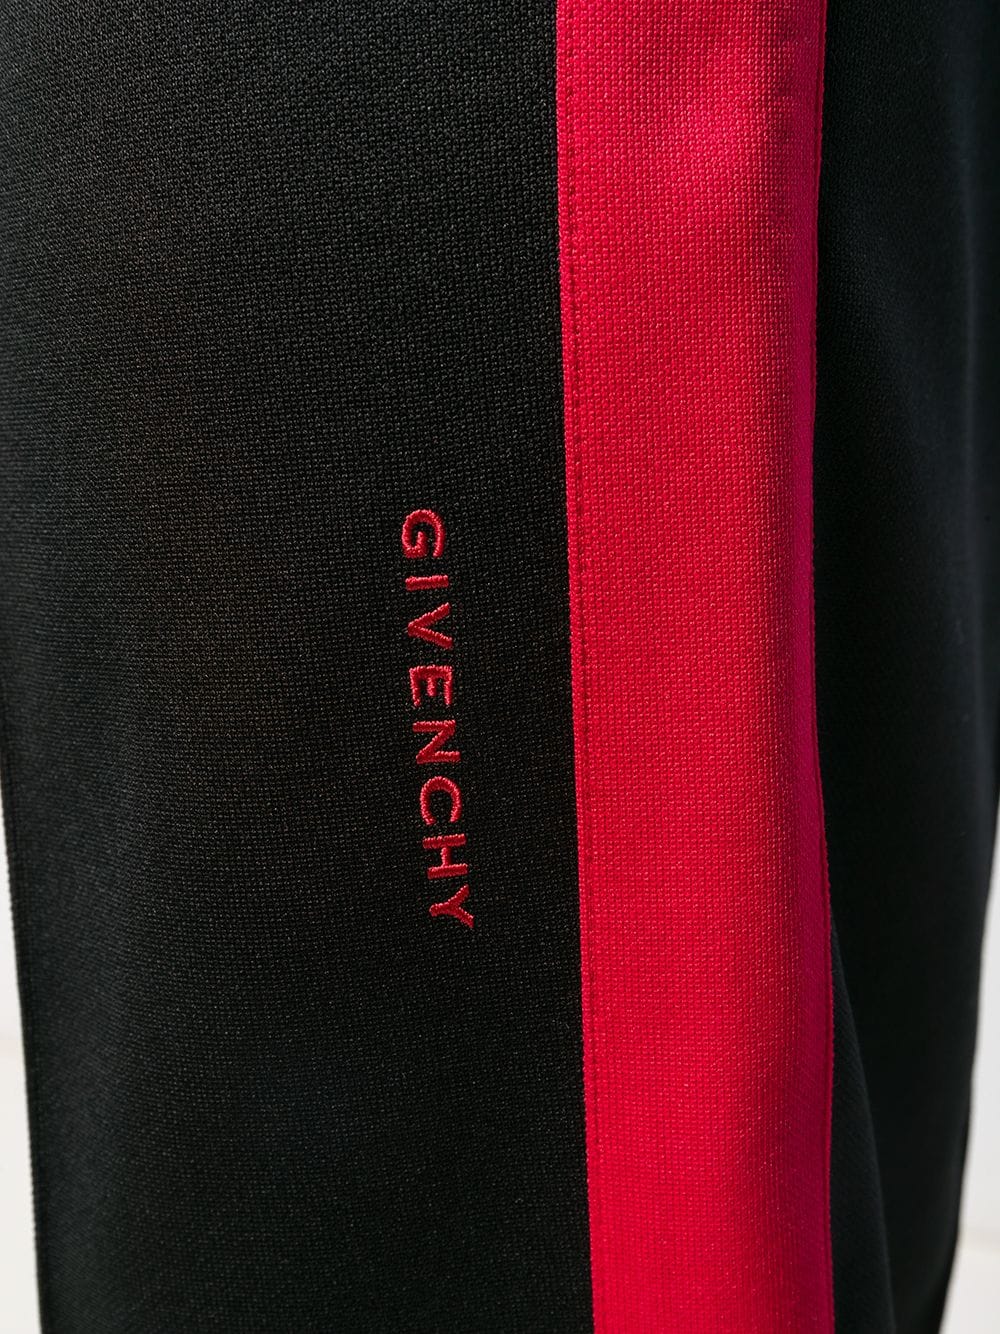 фото Givenchy спортивные брюки с контрастными полосками